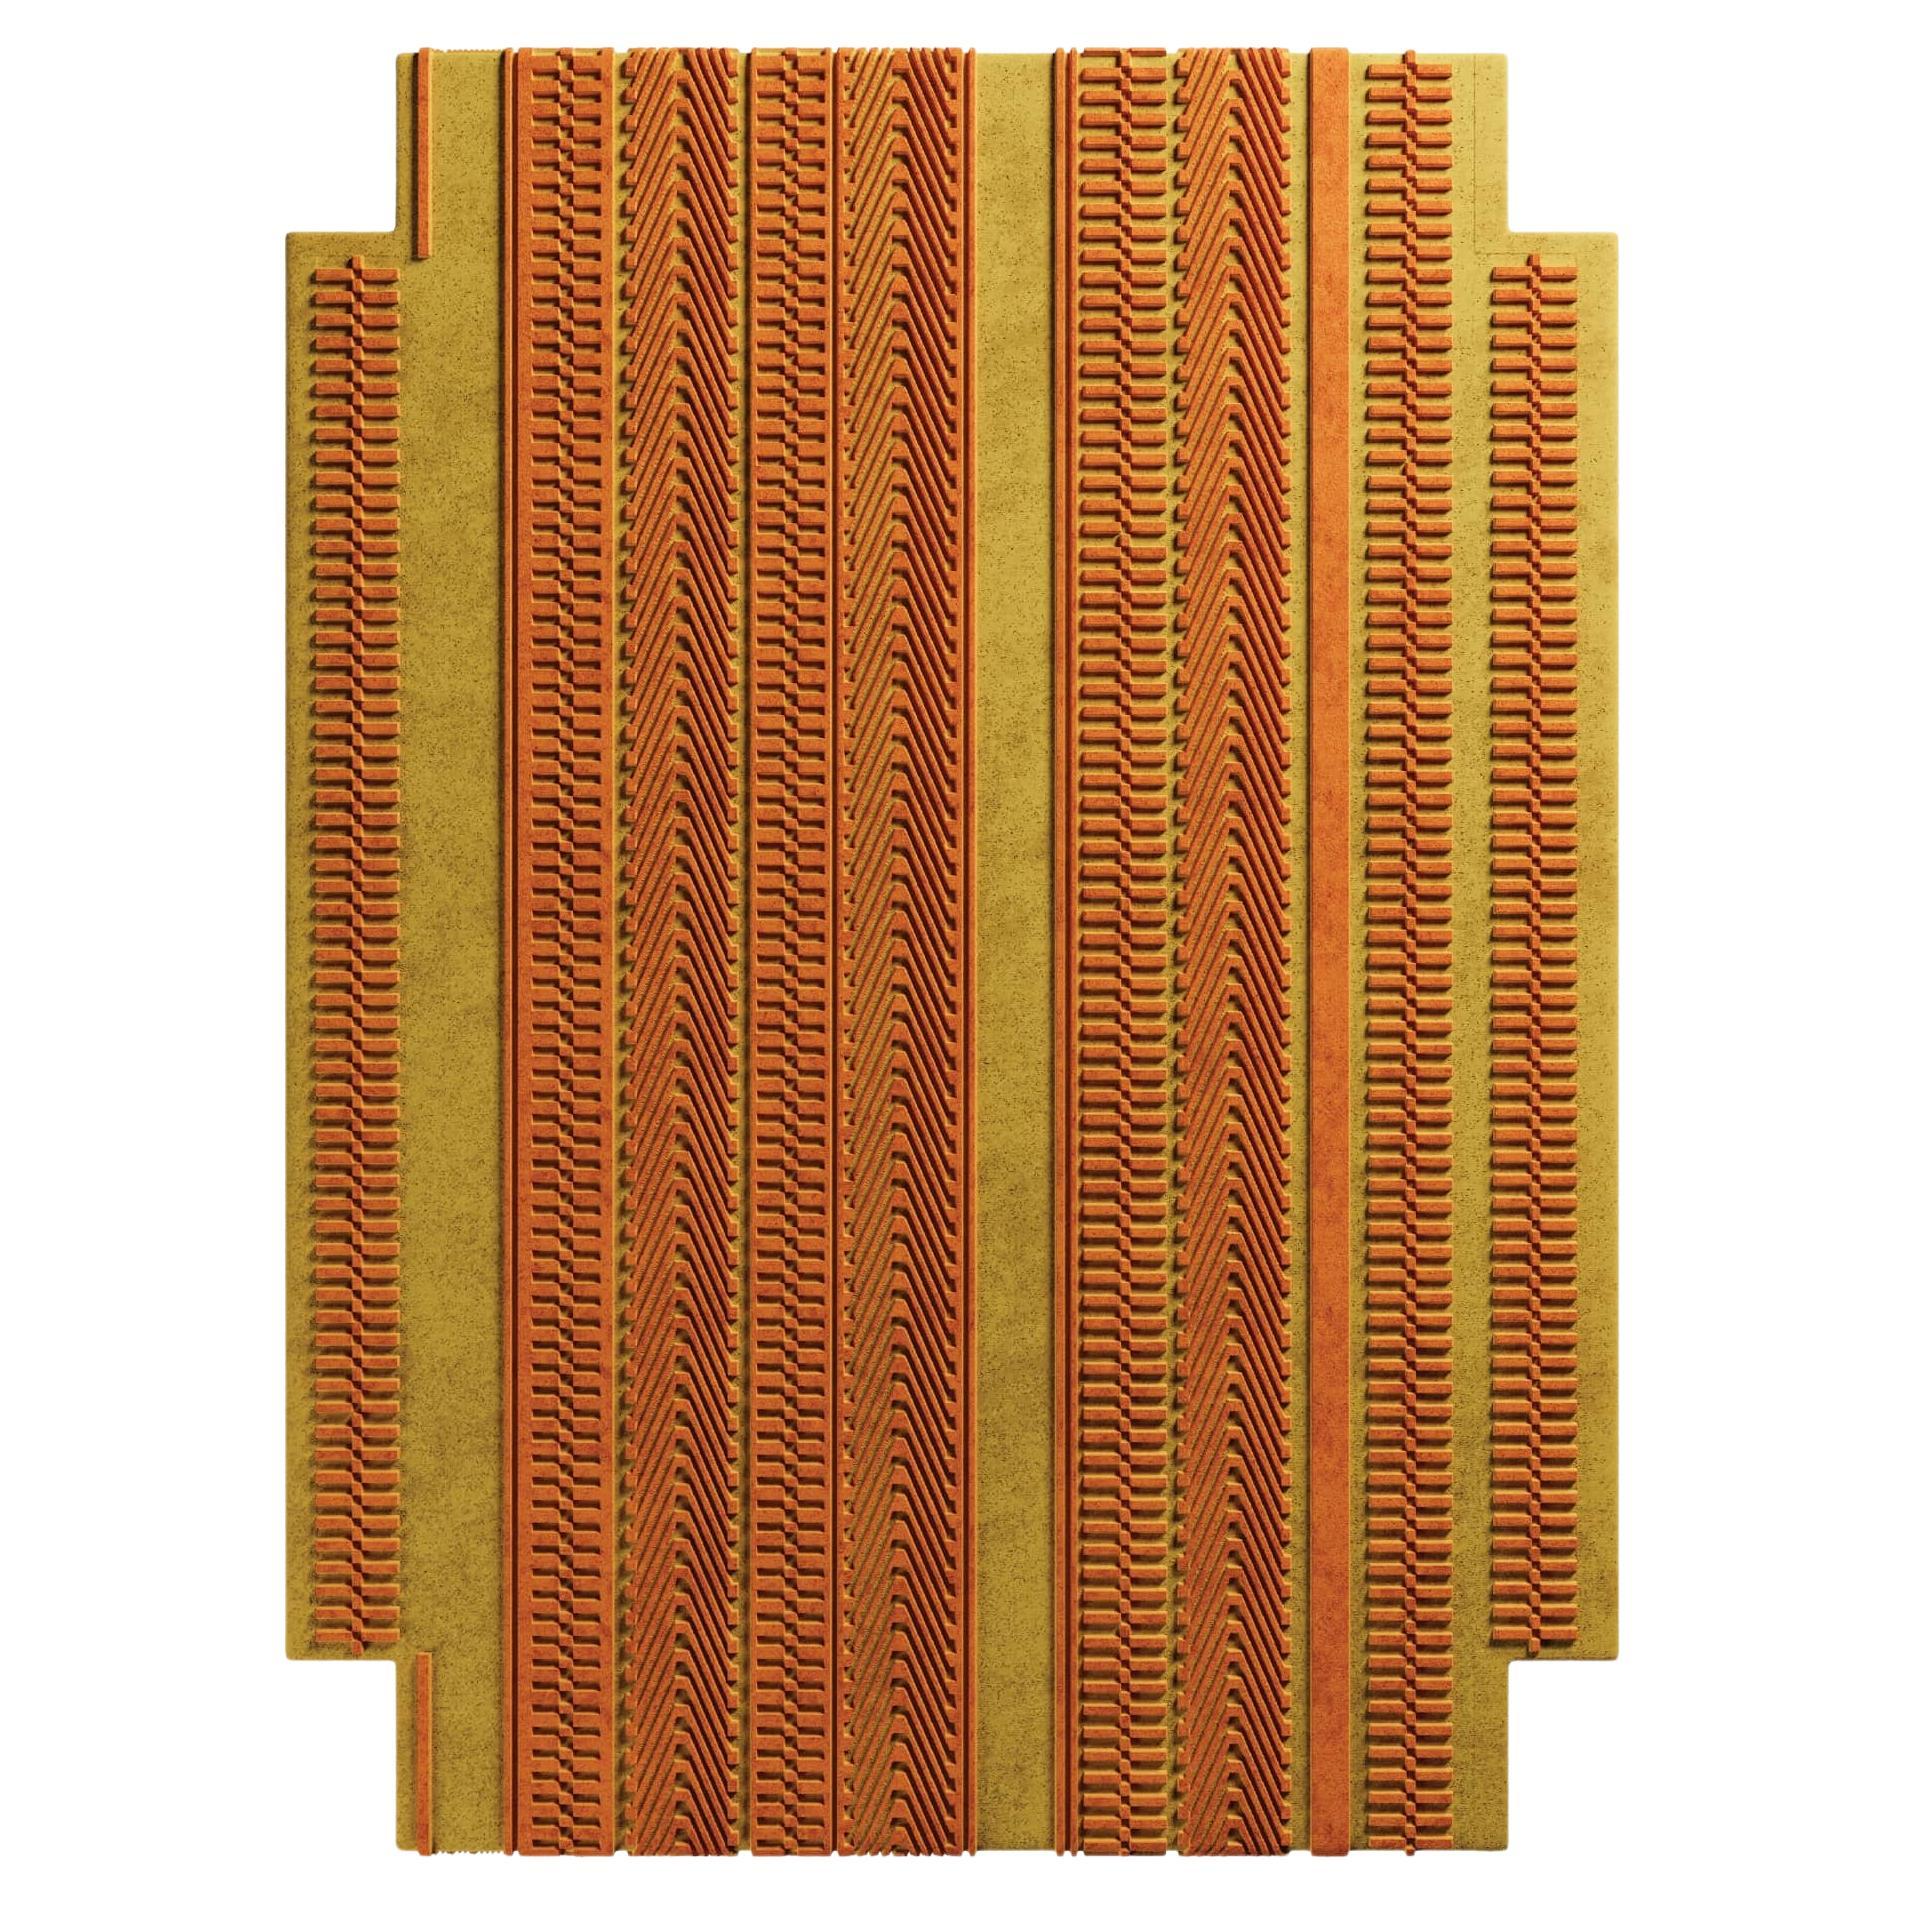 Tapis moderne Arts & Craft Design de forme géométrique touffeté à la main jaune et orange